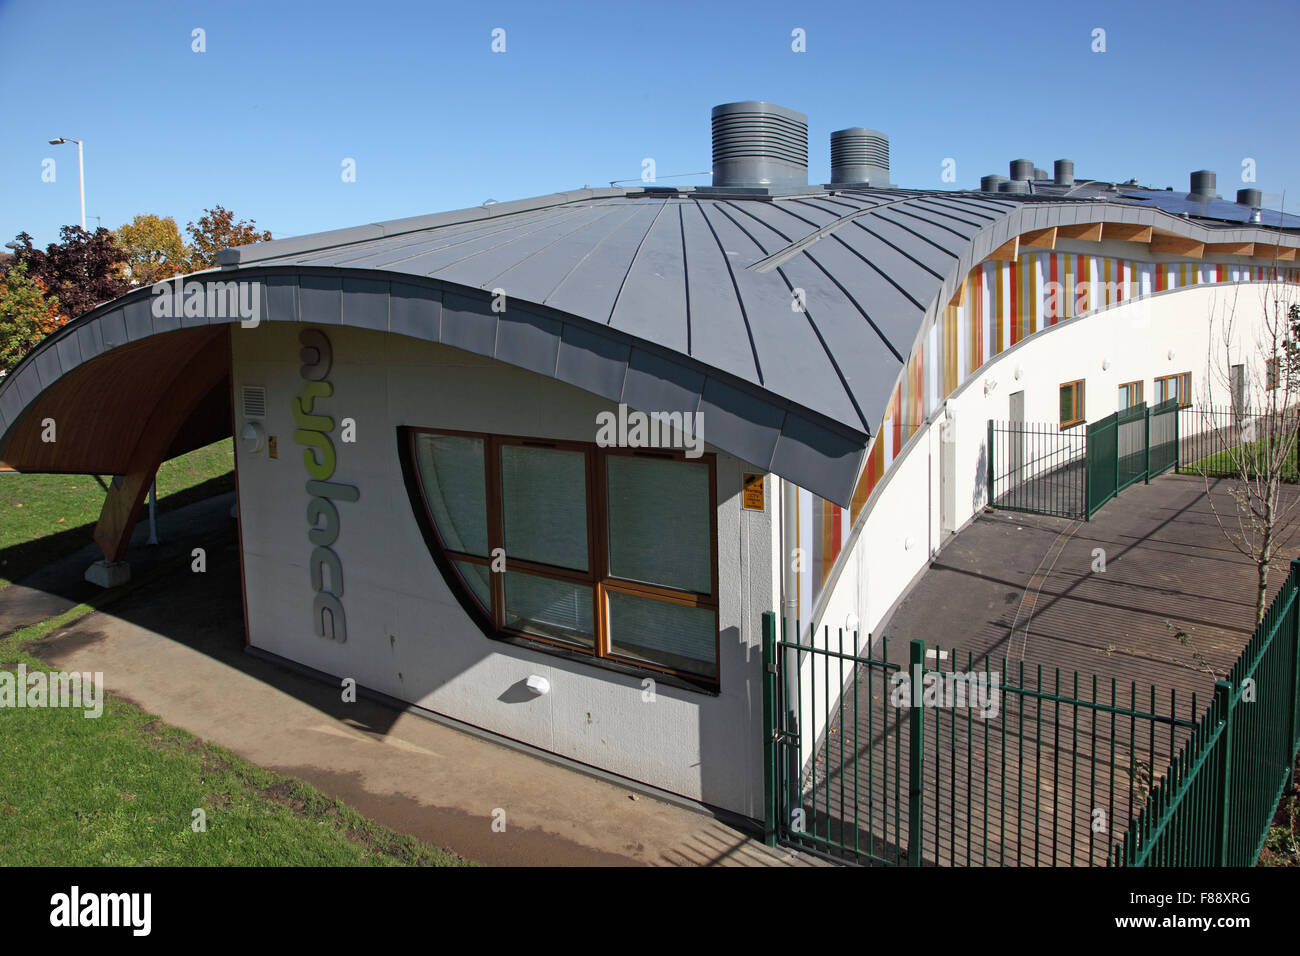 Estructura de techo curvo fotografías e imágenes de alta resolución - Alamy